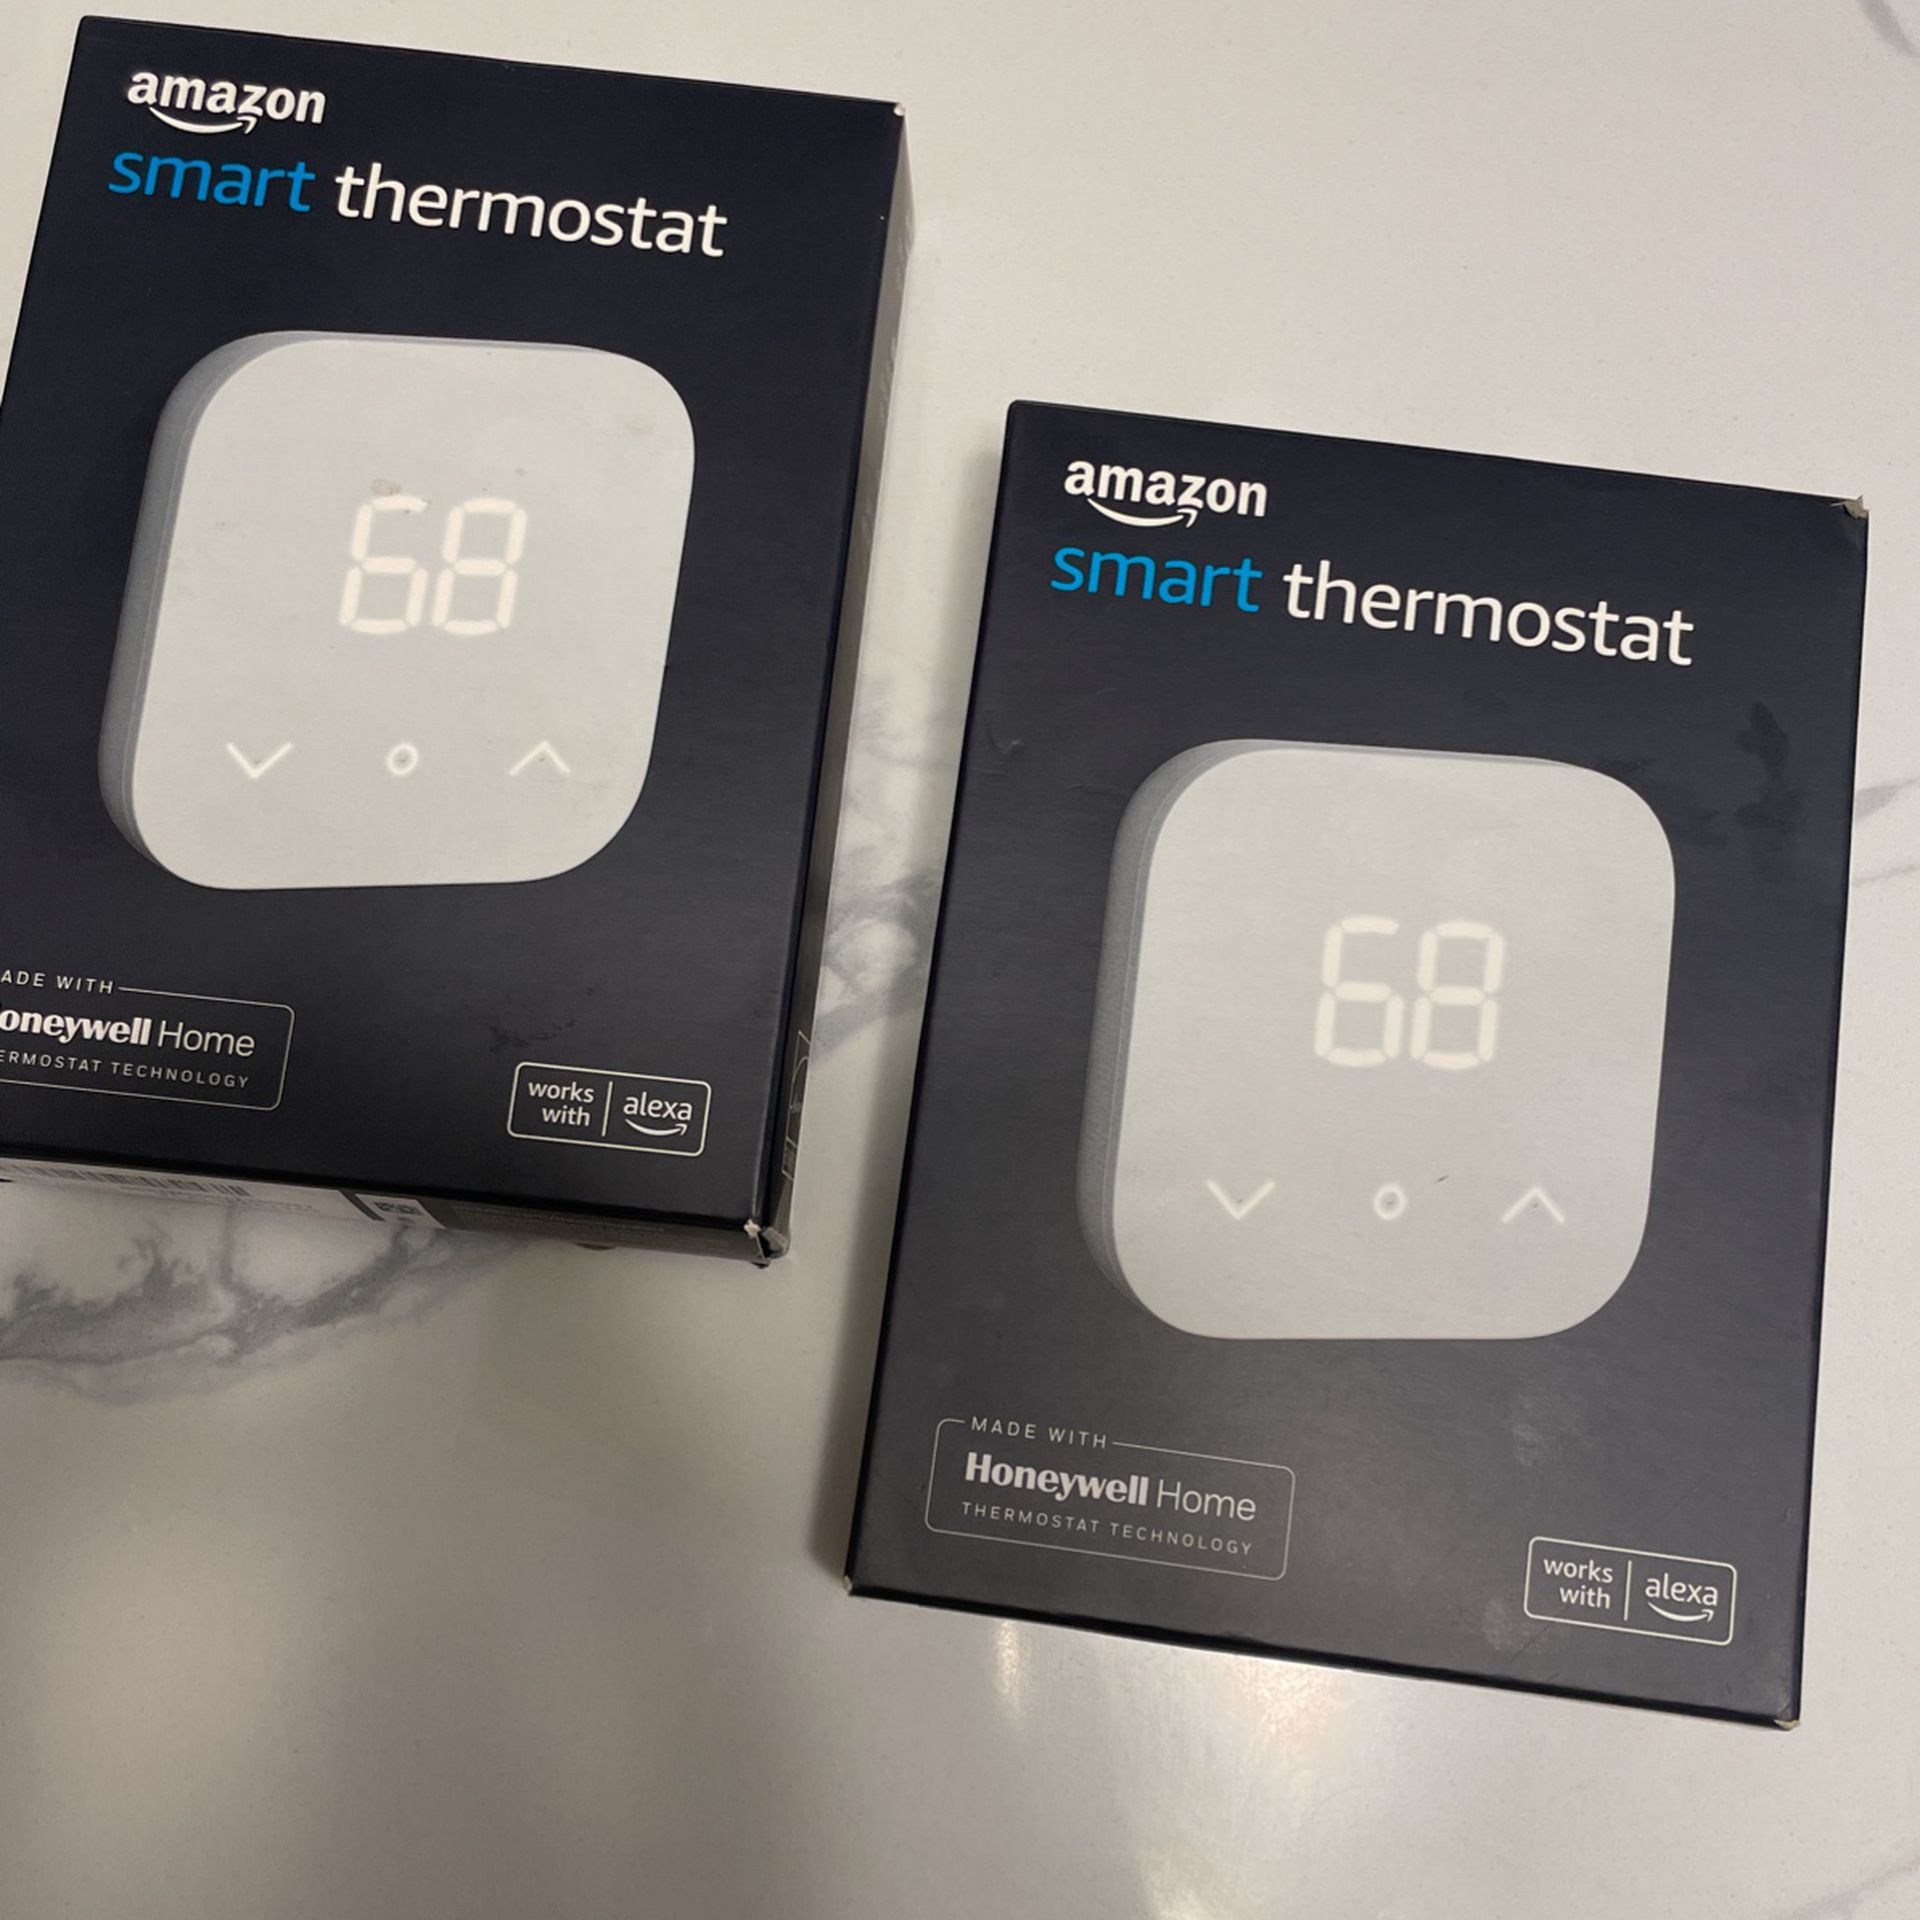 Amazon smart thermostats - Qty 2